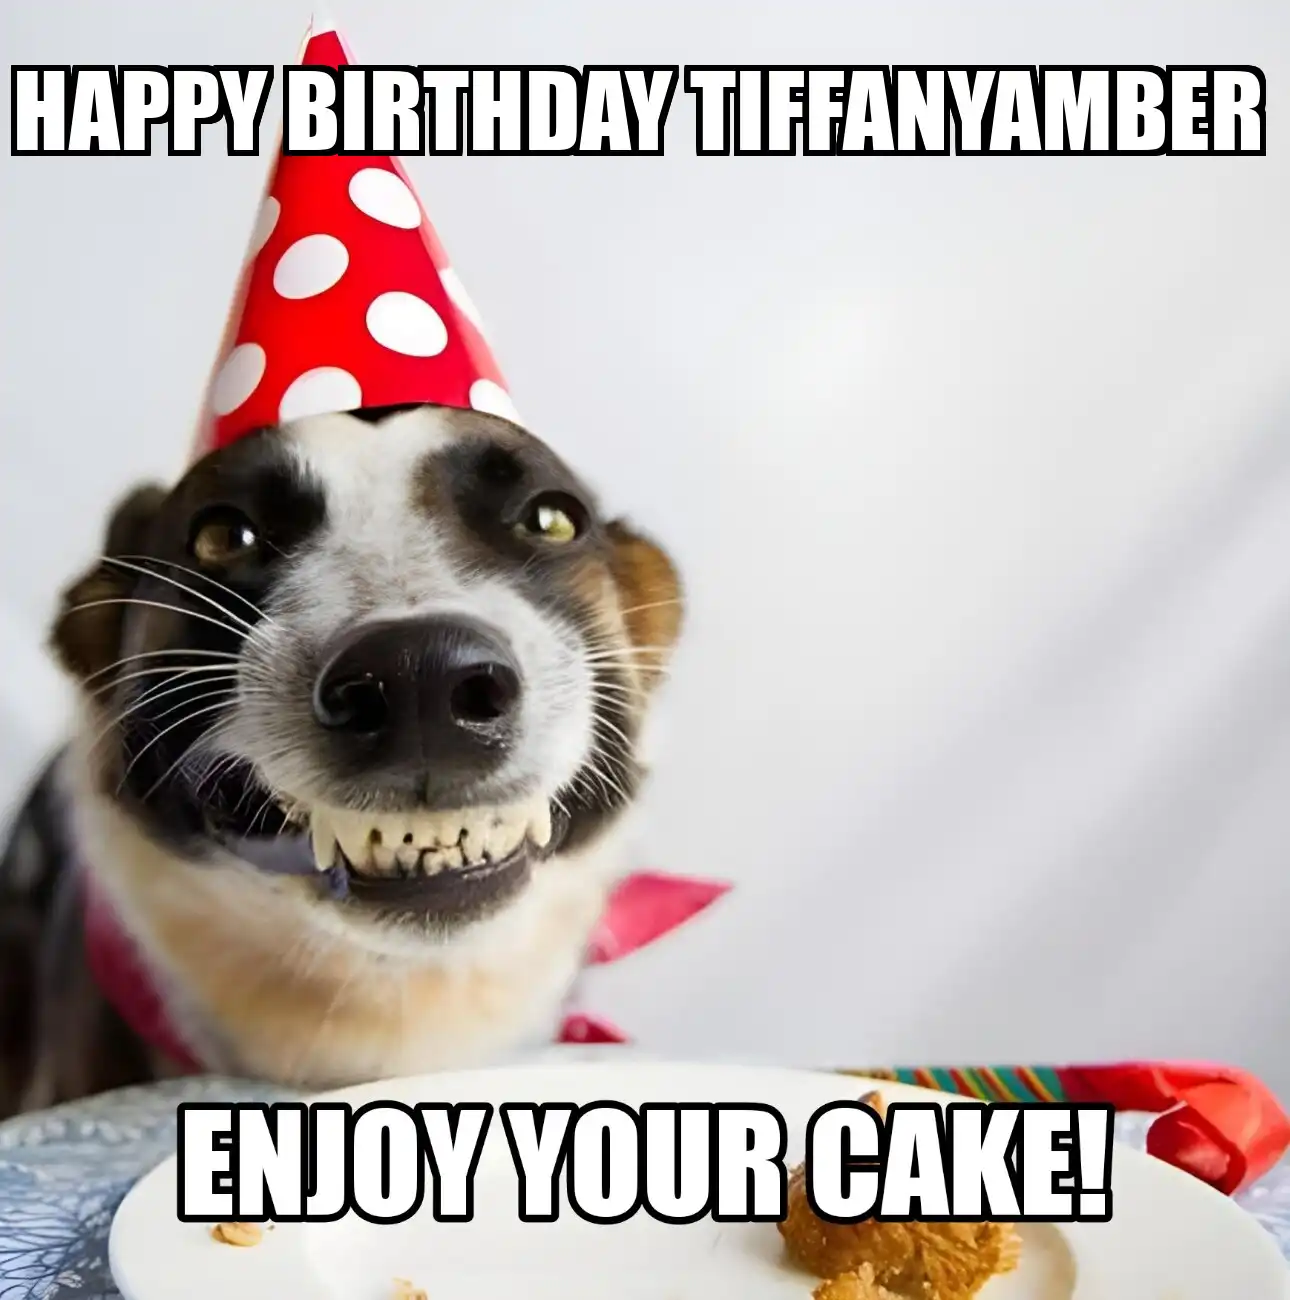 Happy Birthday Tiffanyamber Enjoy Your Cake Dog Meme